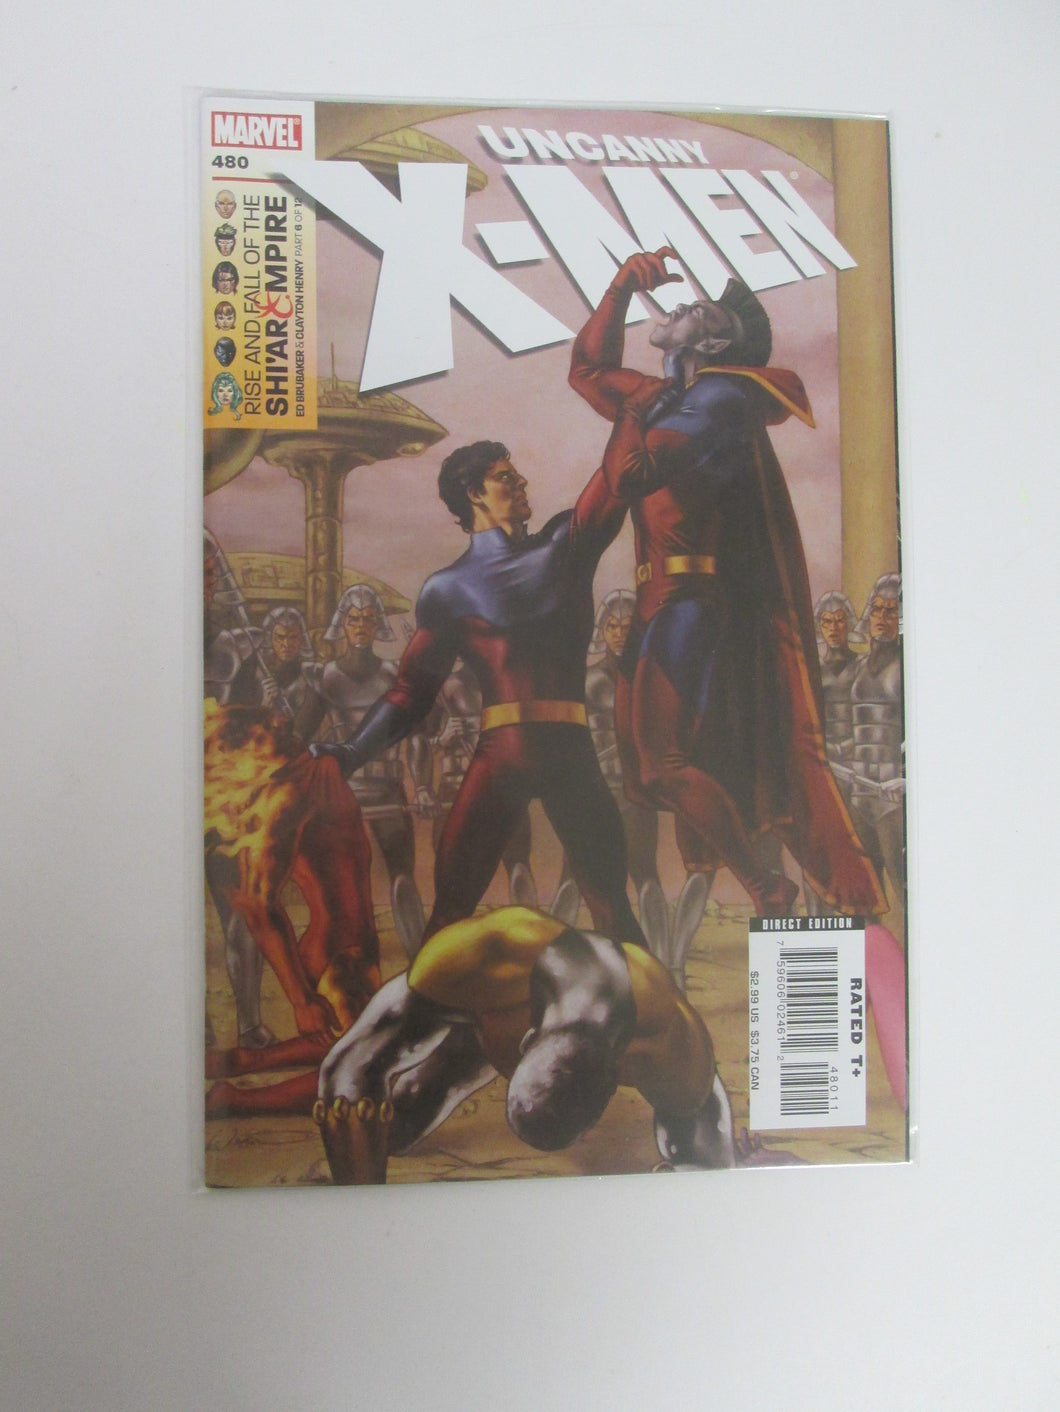 Uncanny X-Men # 480 (Marvel)